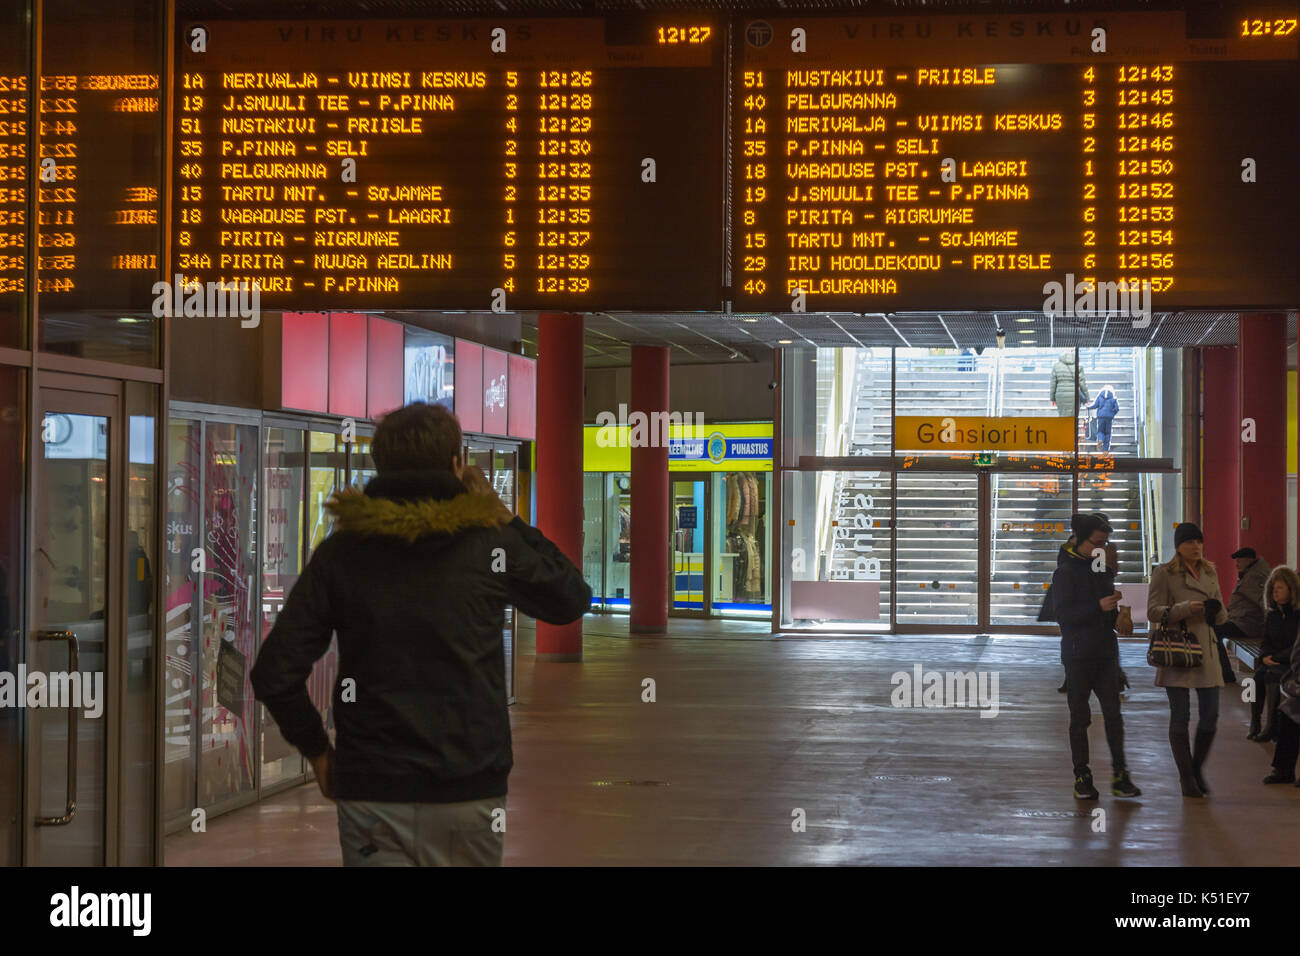 Watching bus timetables at Viru Keskus bus terminal in Tallinn Estonia Stock Photo